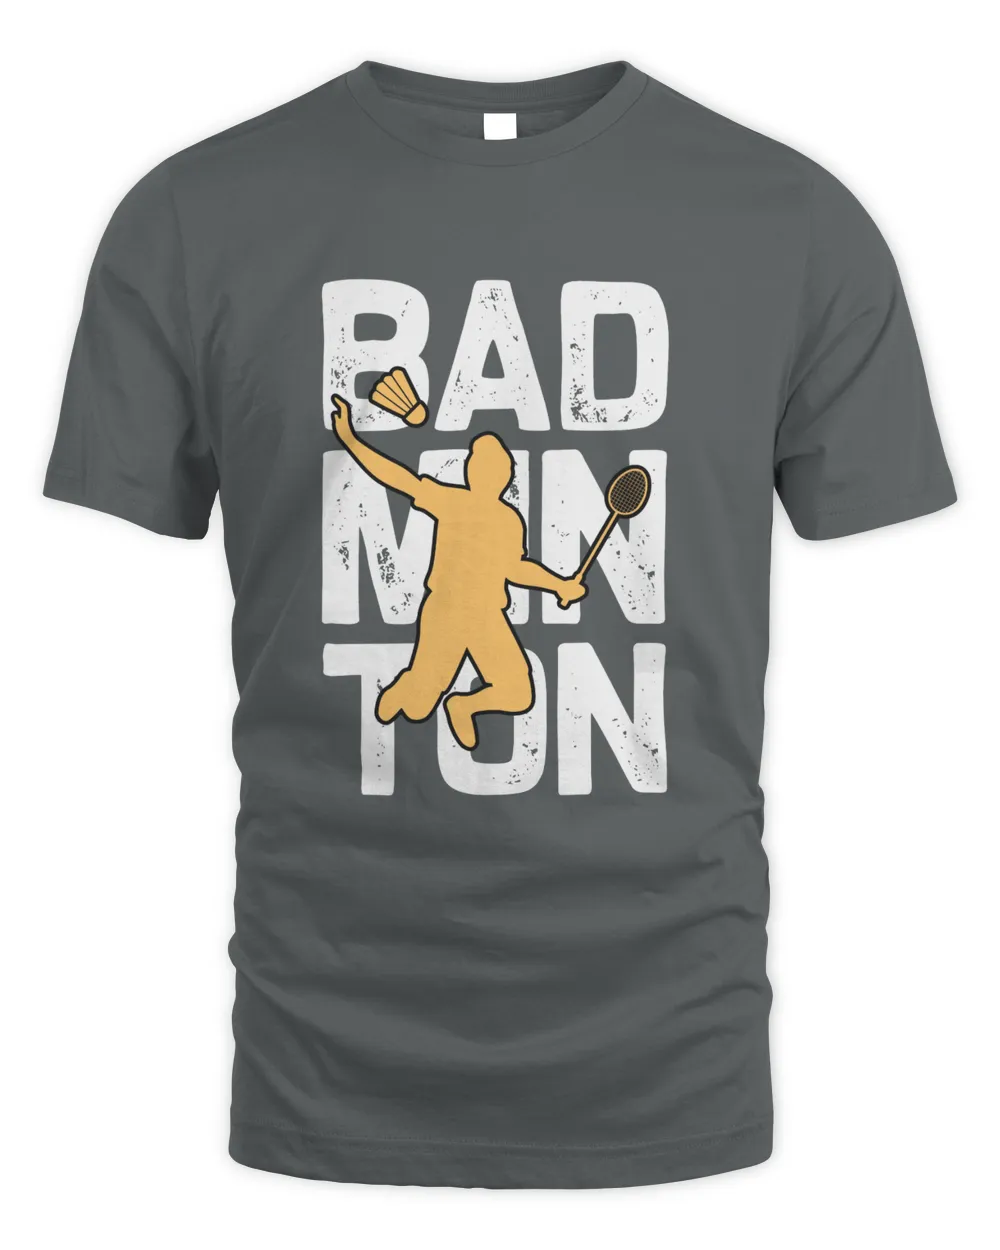 Bad Shirt, Badminton Shirt,Badminton T-shirt,Funny Badminton Shirt, Badminton Gift,Sport Shirt